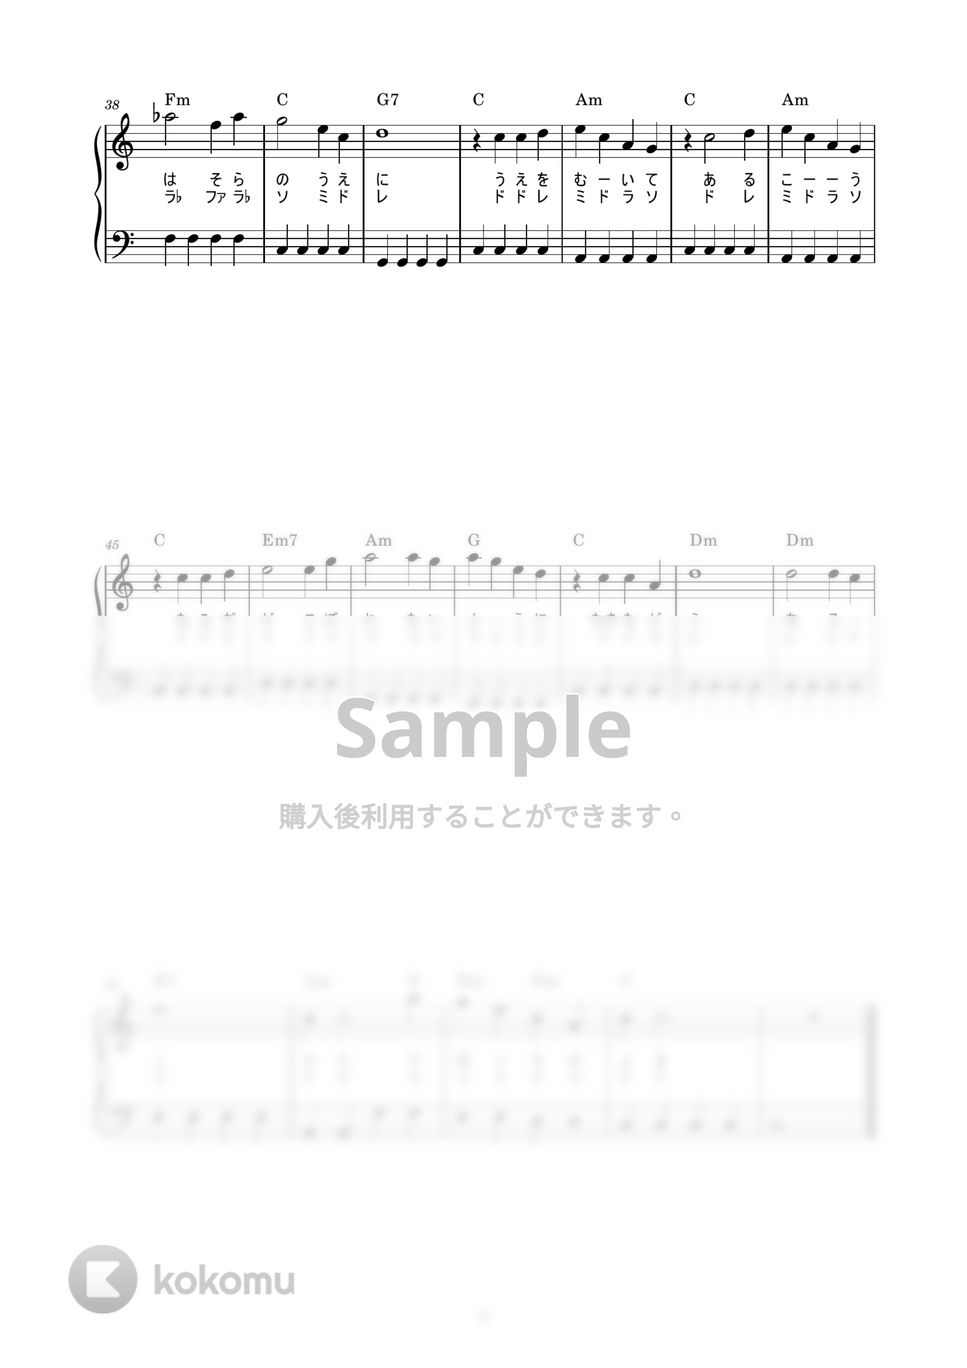 坂本九 - 上を向いて歩こう (かんたん / 歌詞付き / ドレミ付き / 初心者) by piano.tokyo